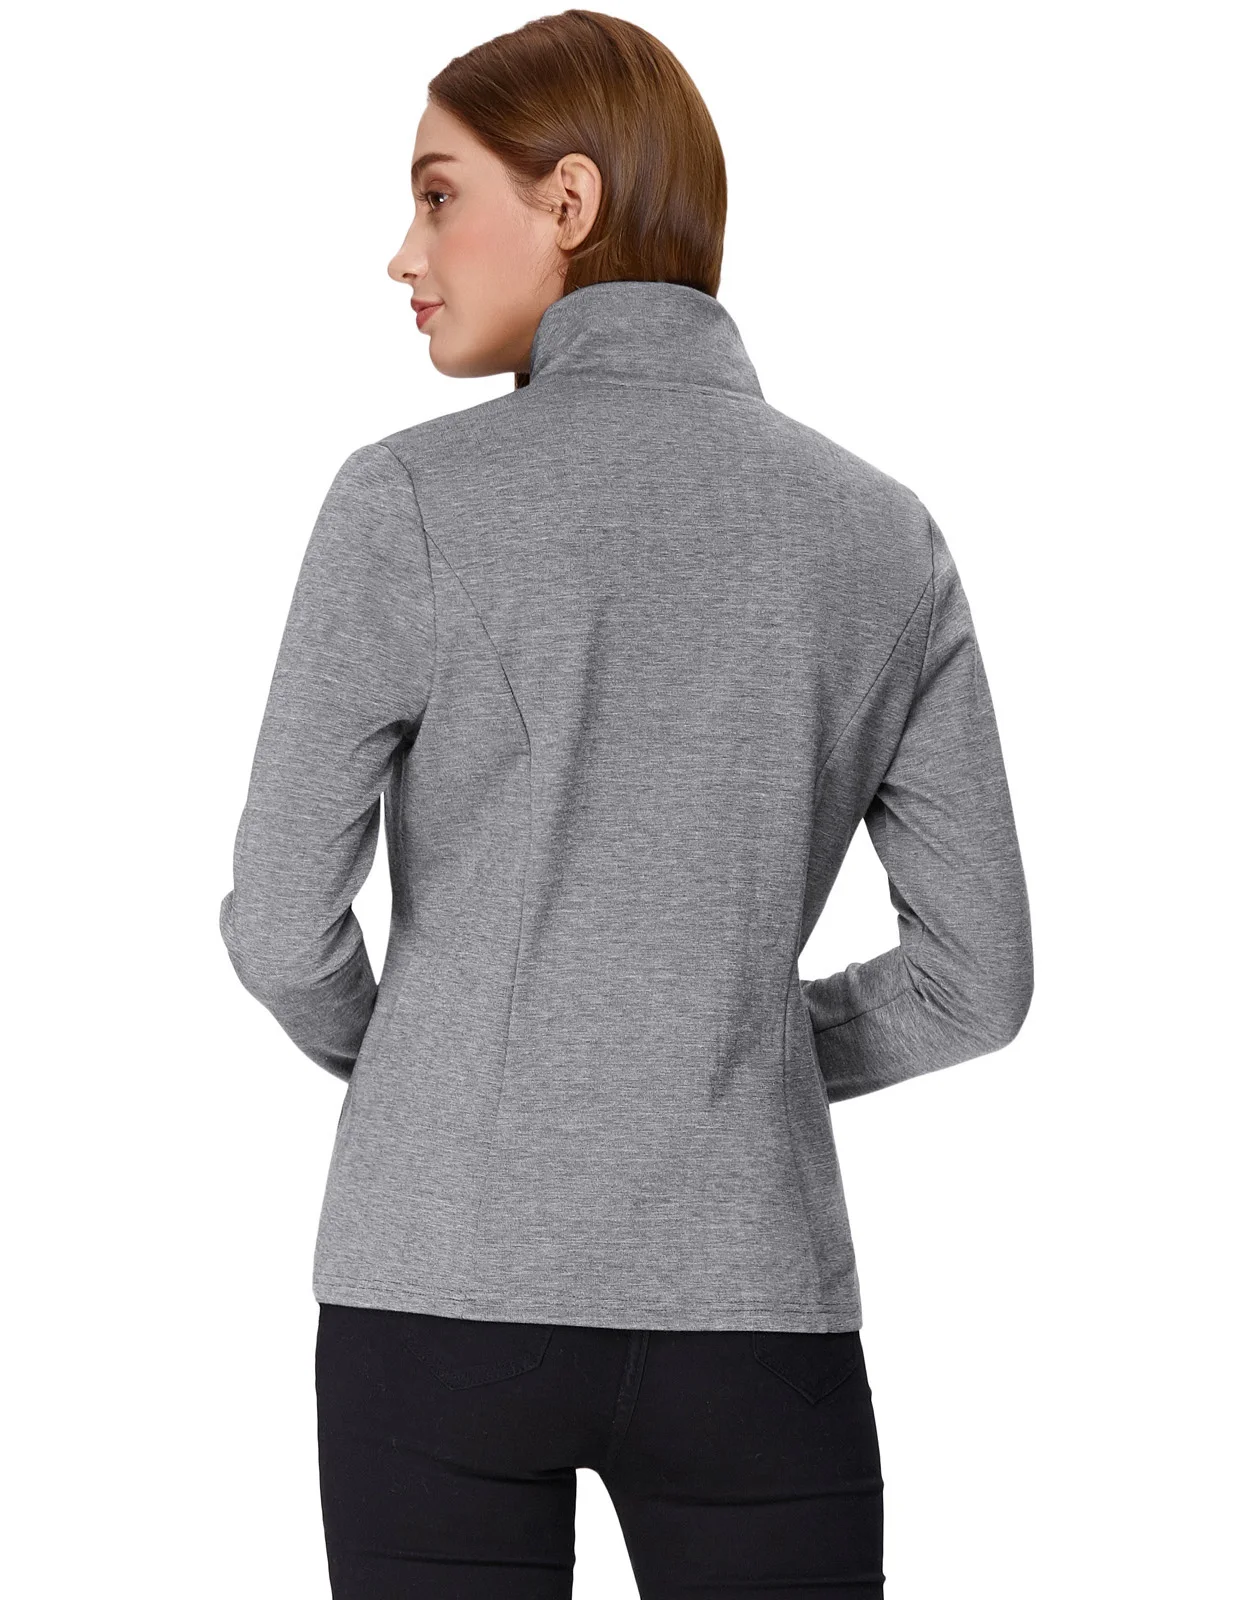 KK женское приталенное пальто осень весна стильное приталенное пальто с длинным рукавом и отворотным воротником с карманом на молнии однотонная спортивная одежда топы для девушек